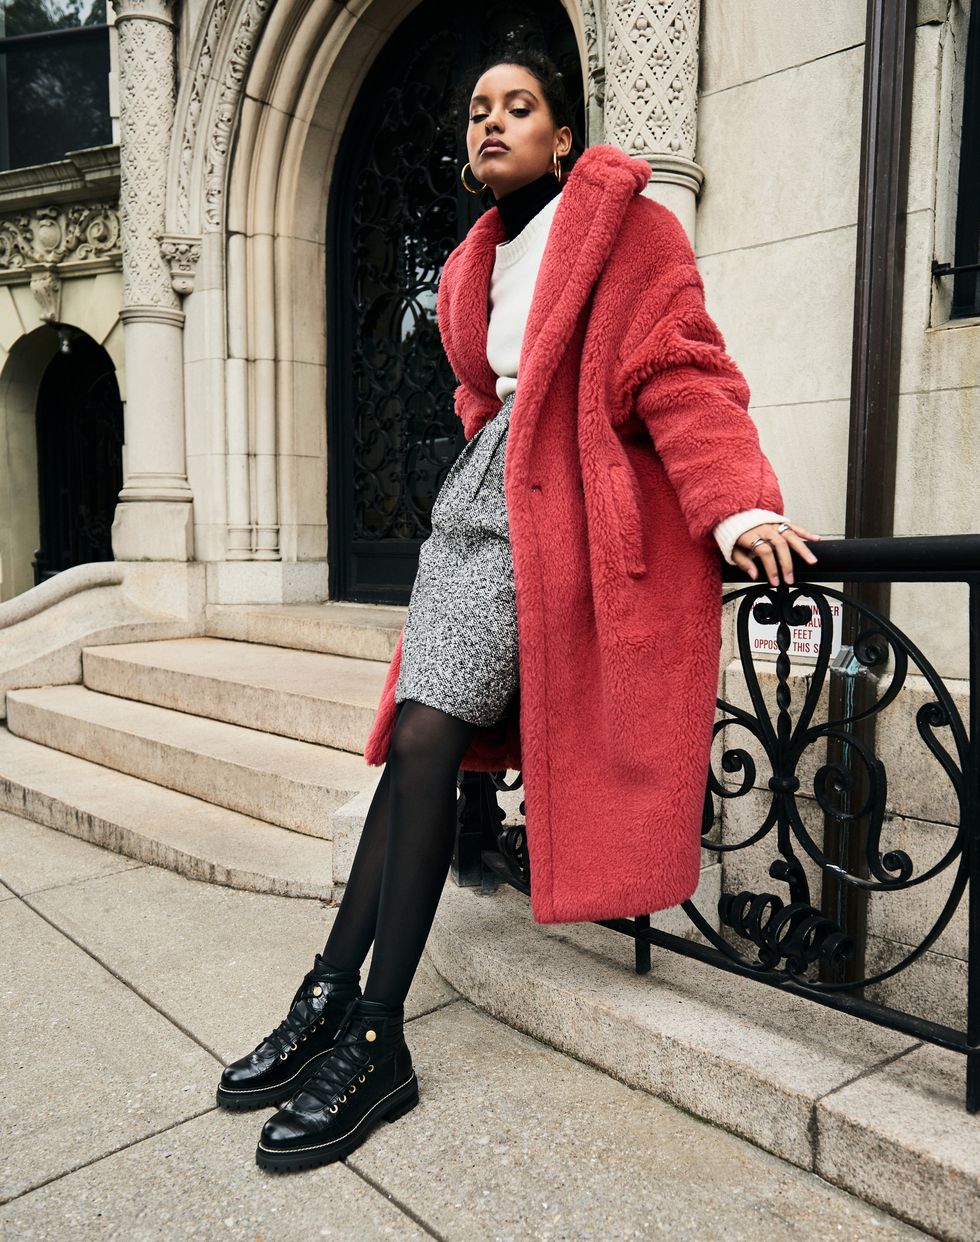 A model in a red fur coat